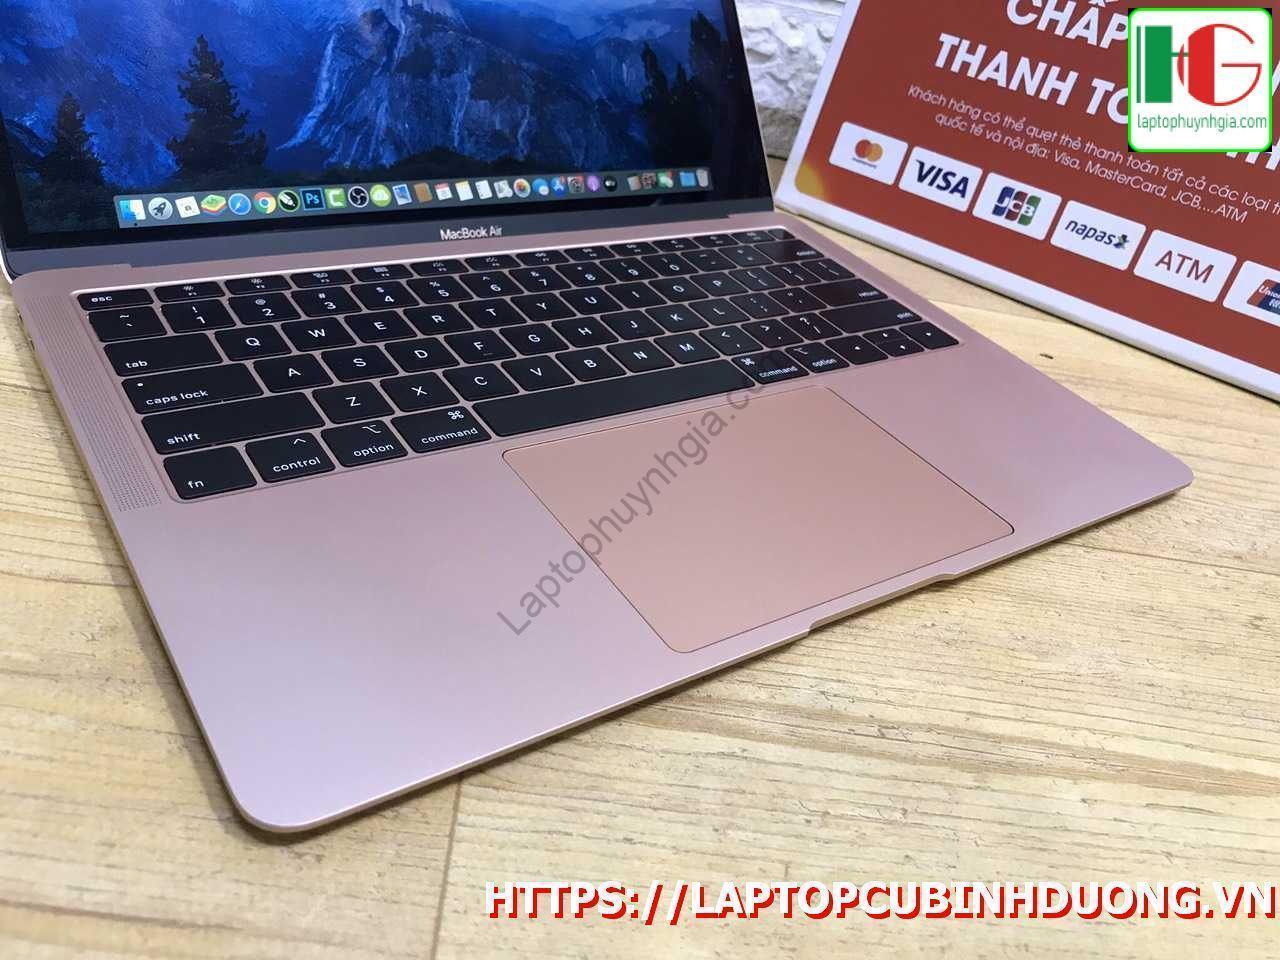 Macbook Air 2018 I5 8g Ssd 128g Laptopcubinhduong.vn 3